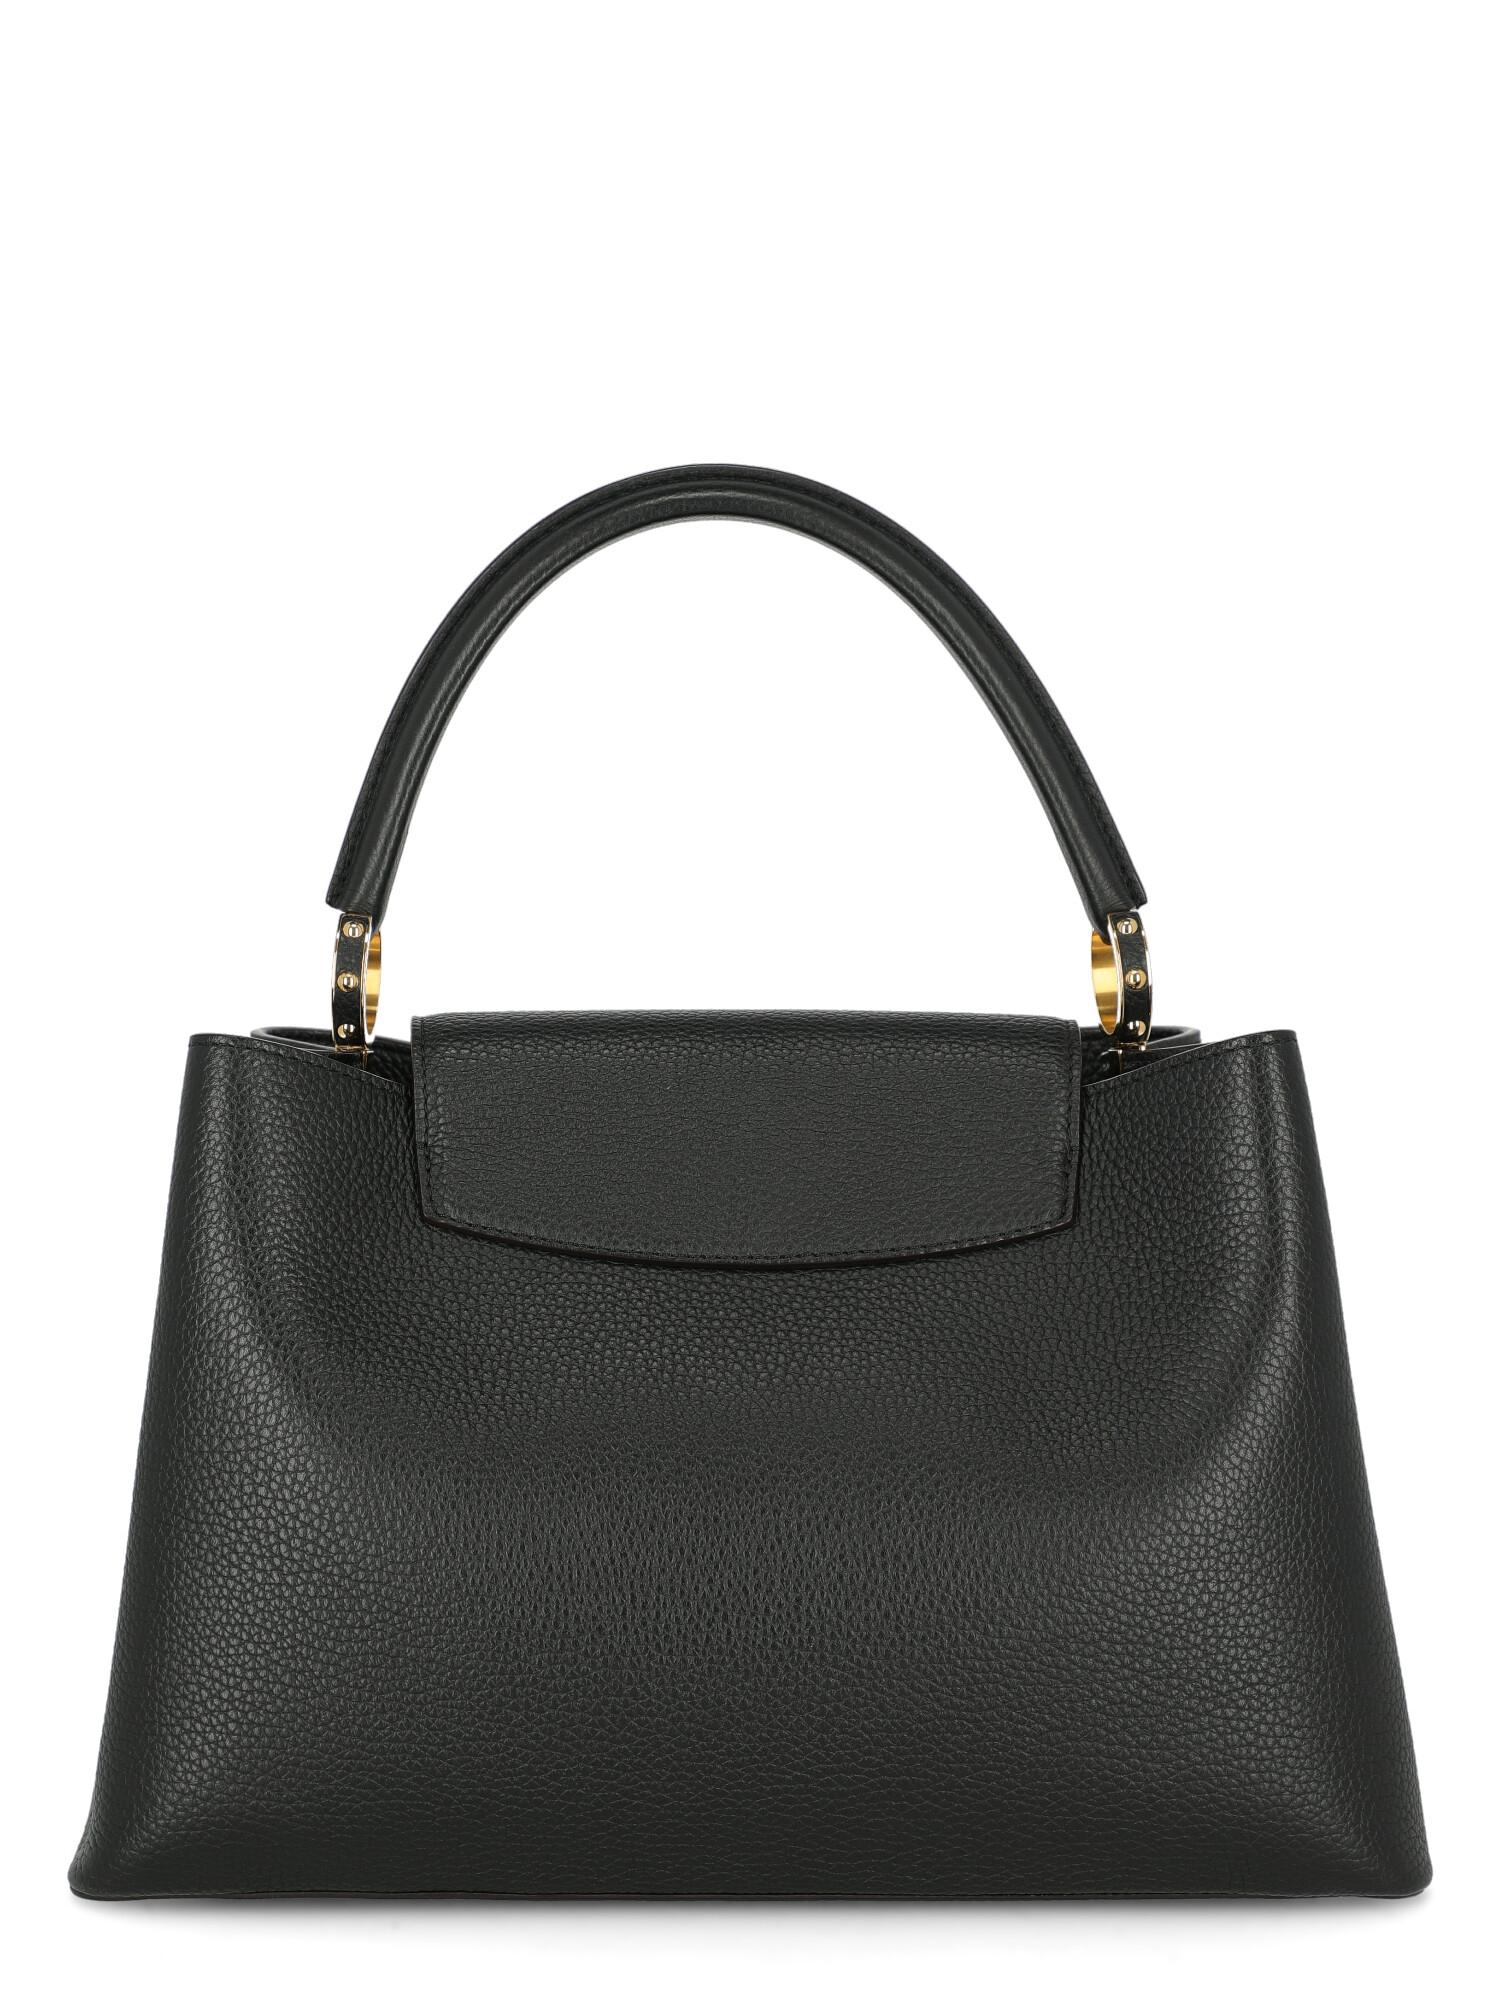 Louis Vuitton Women's Handbag Capucines Black Leather For Sale 1